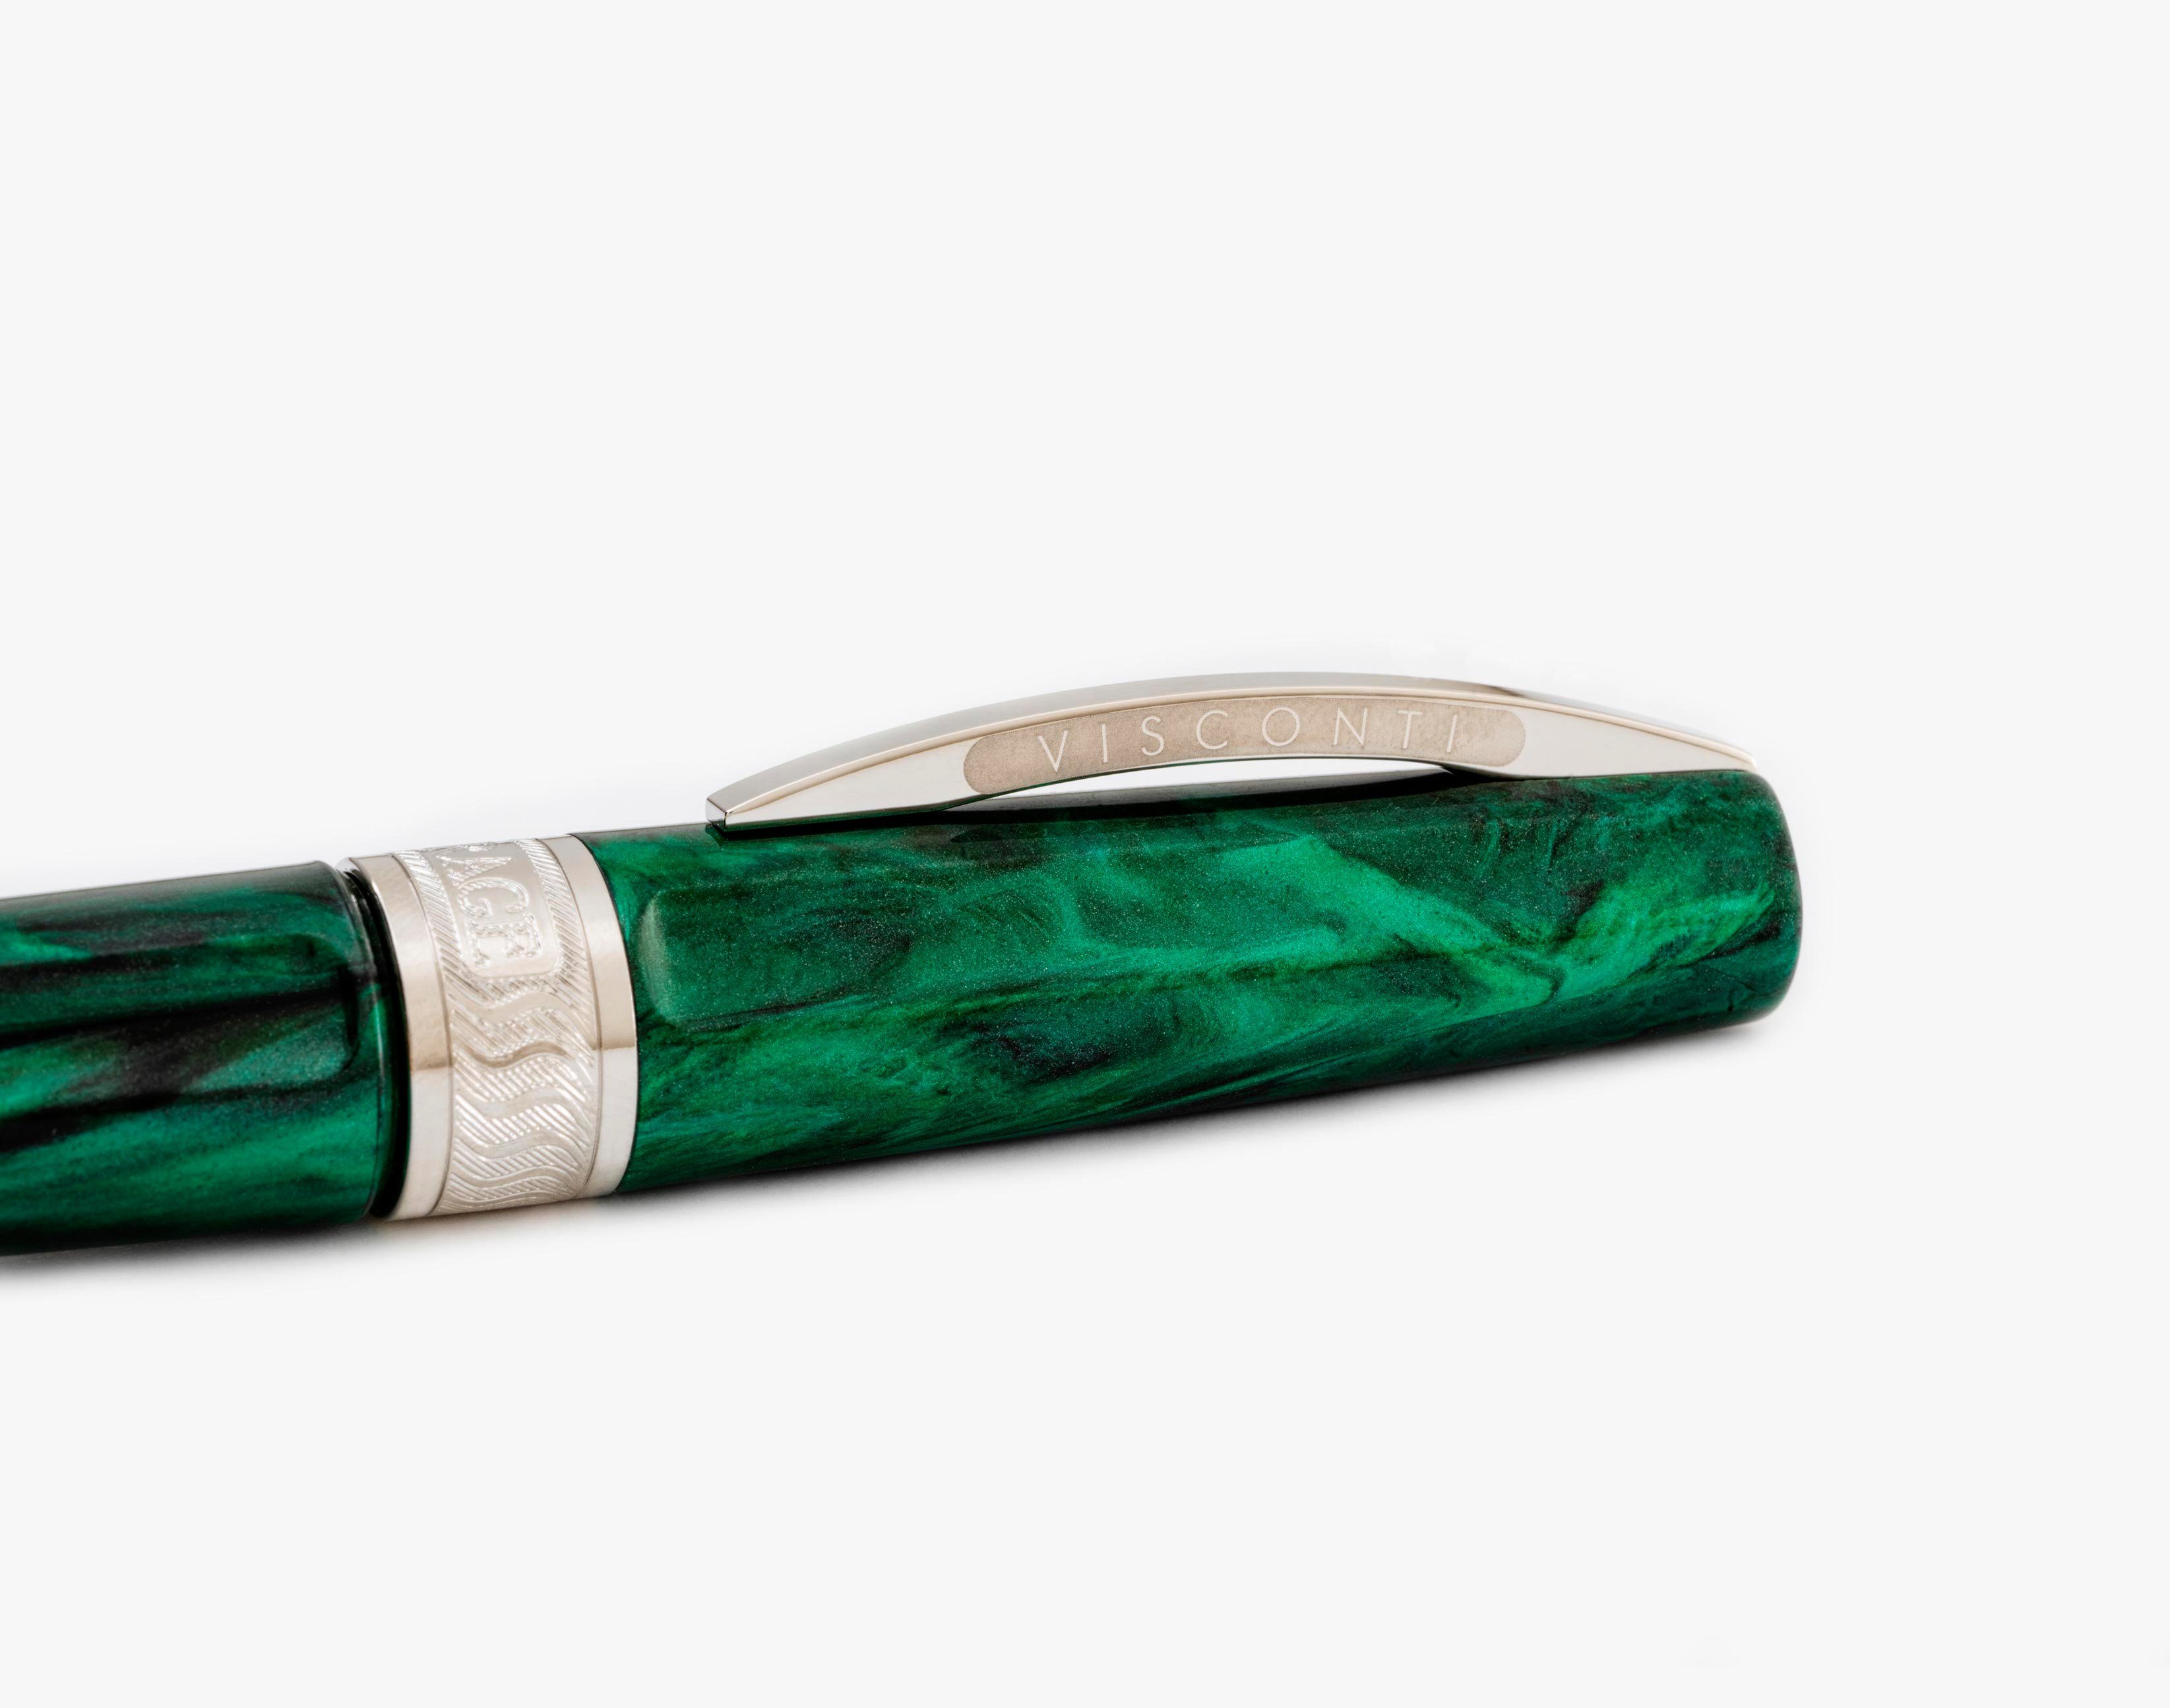 Visconti Füllfederhalter Visconti Mirage Füllfederhalter Pen EF Fountain Emerald verschiedene, (kein Set) Emerald